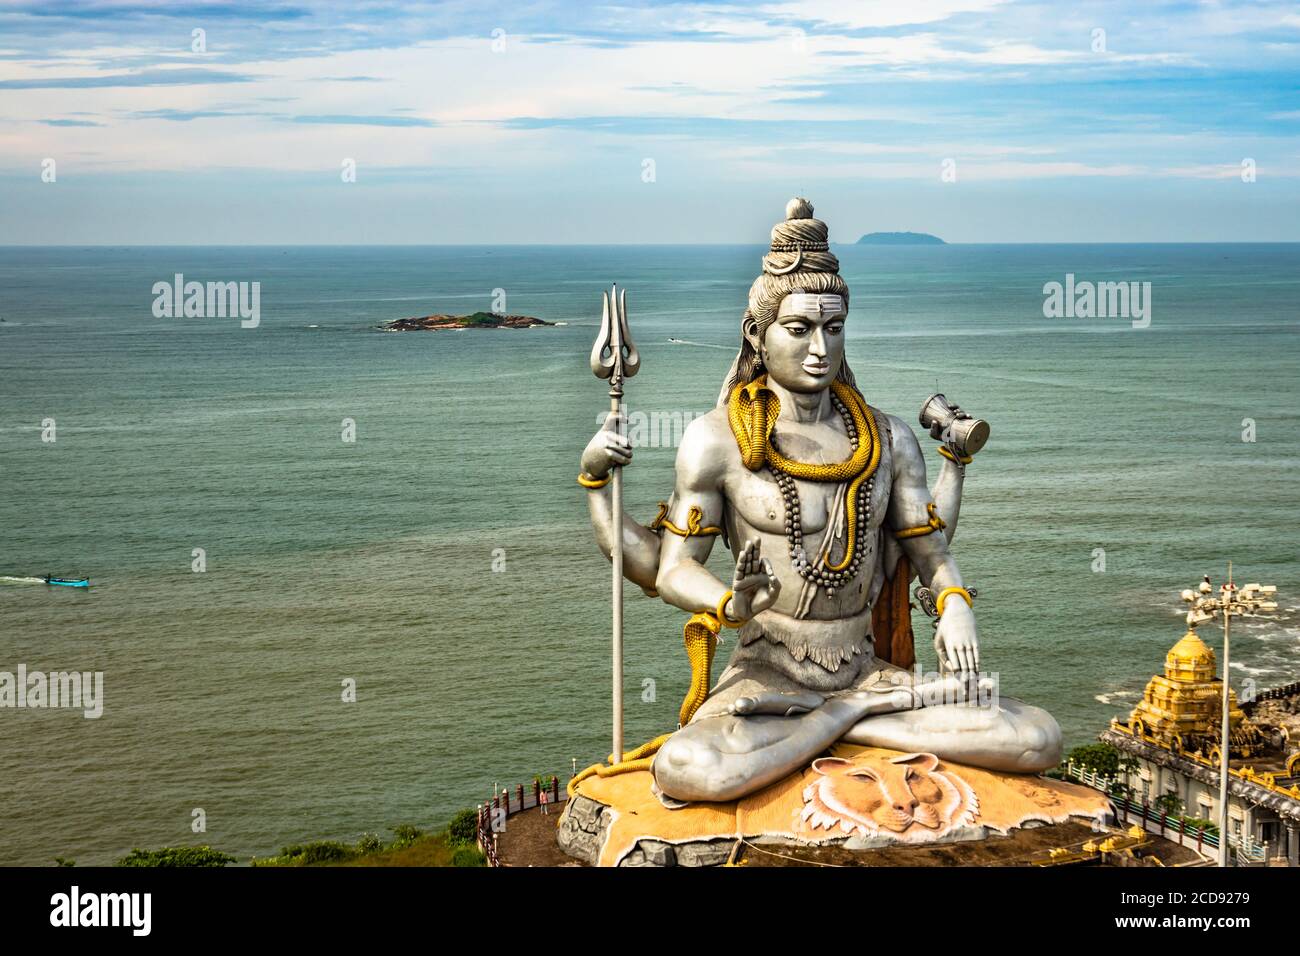 la statua di shiva, isolata al tempio murdeshwar, scatta foto aeree con il mare arabo sullo sfondo, è stata realizzata al murdeshwar karnataka india Foto Stock